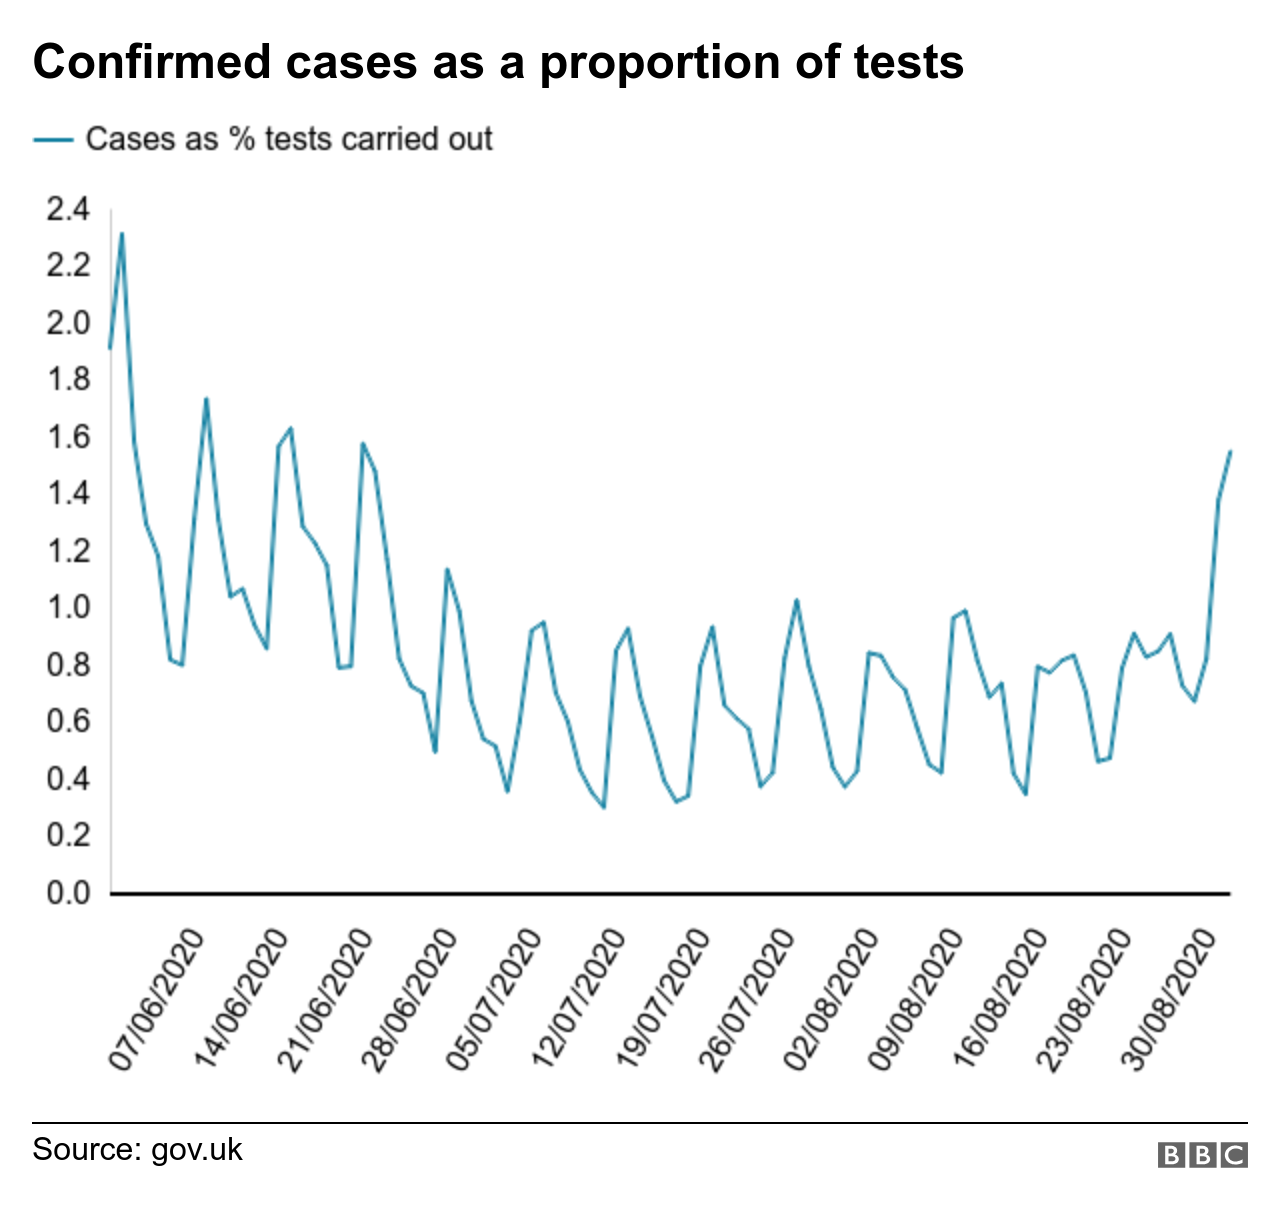 диаграмма, показывающая подтвержденные случаи в процентах от проведенных тестов, с июня по август 2020 г.